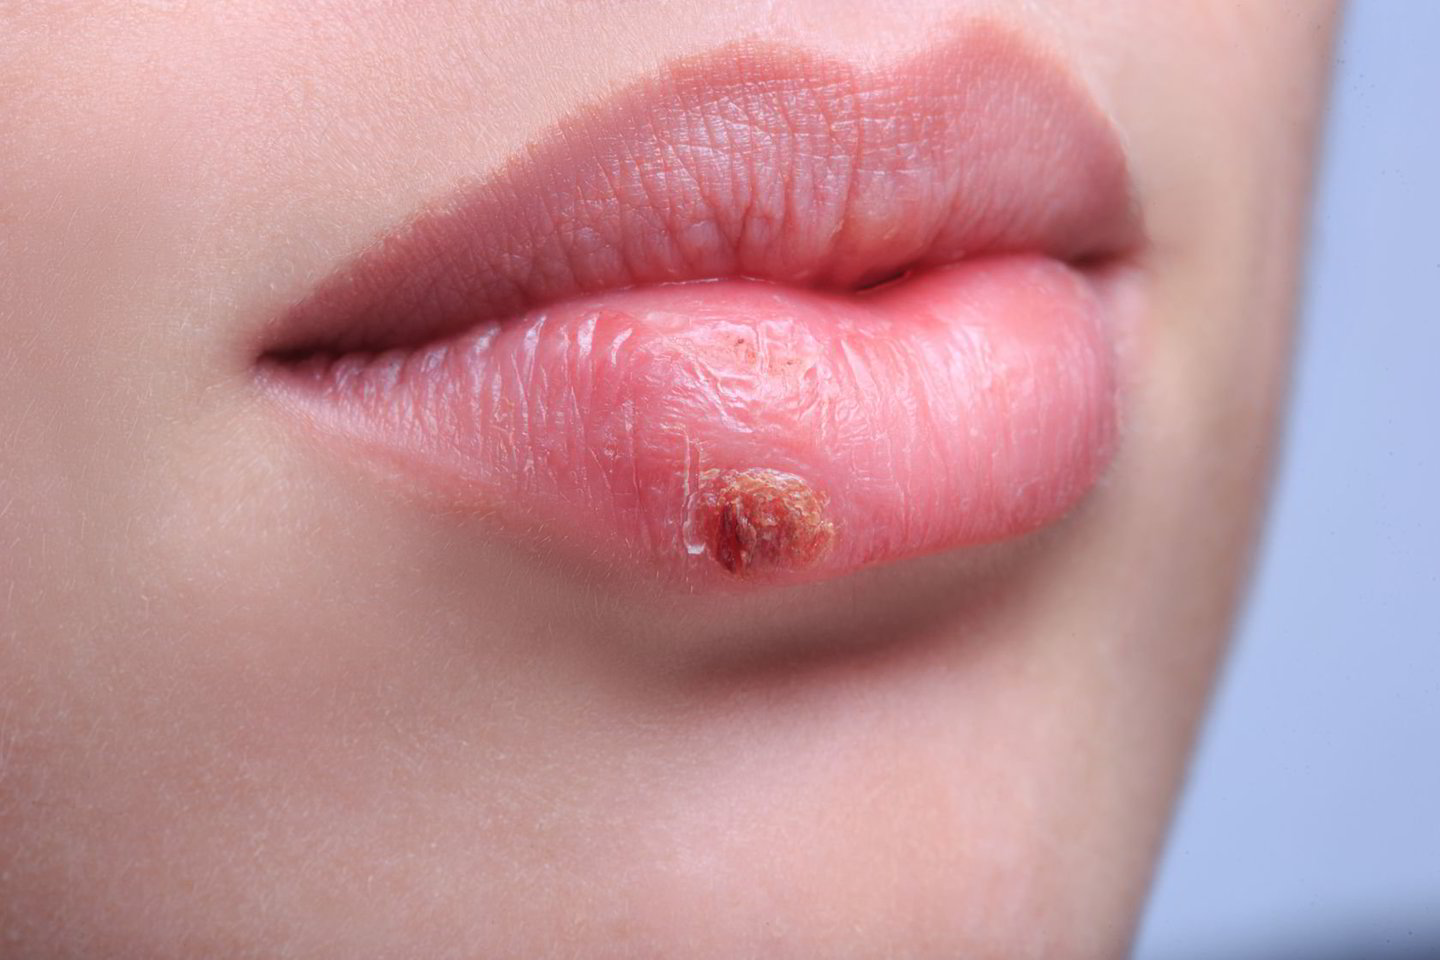  Dažniausiai pasitaikanti infekcija herpes infekcijų grupėje – paprastoji pūslelinė, kurios labiausiai matomas požymis – ant lūpos iškilusios pūslelės, vėliau virstančios šašais.<br> 123rf.com nuotr.